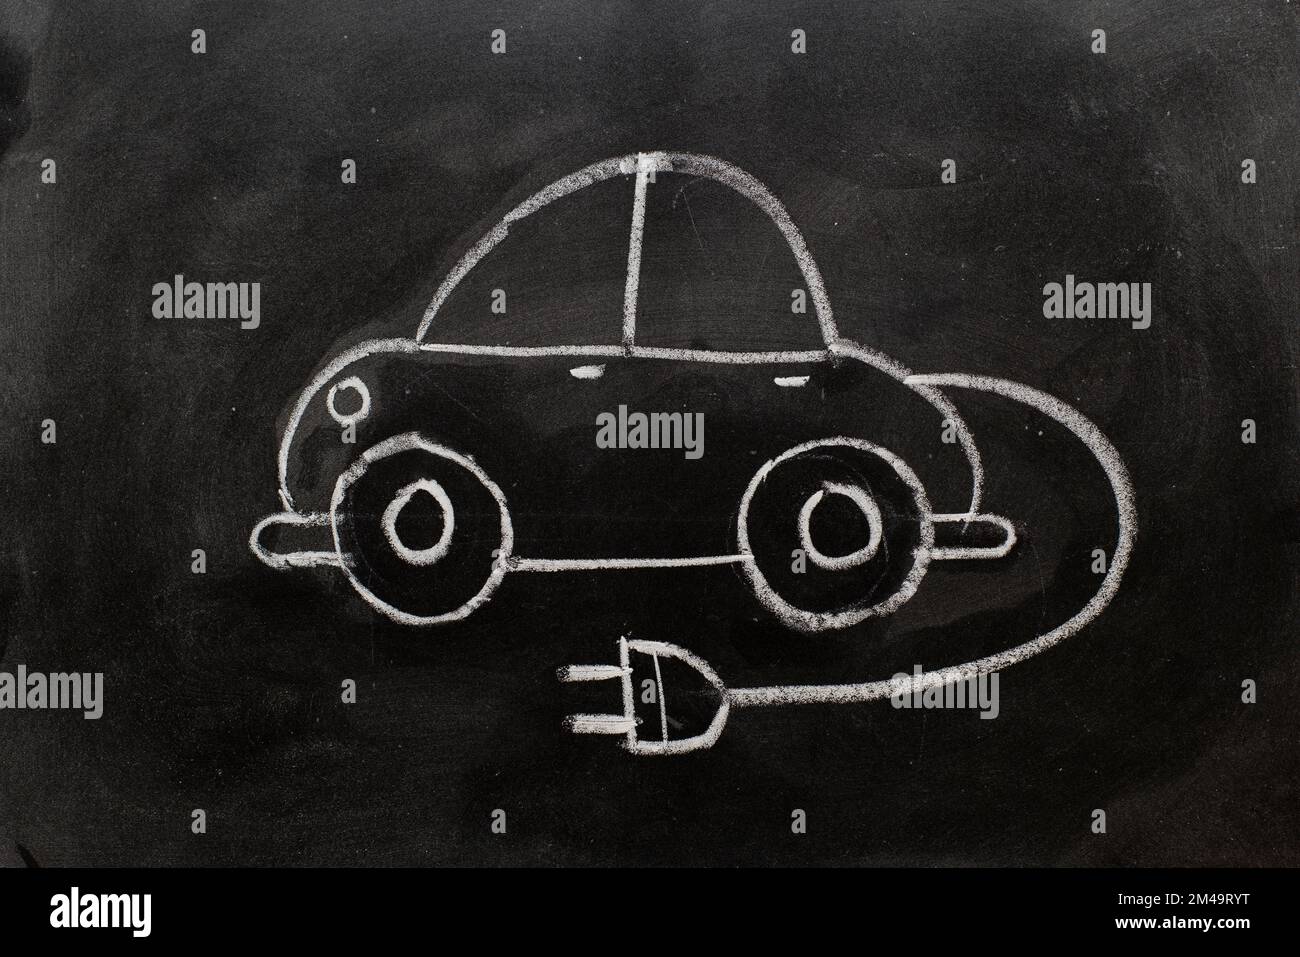 Coche eléctrico con símbolo de icono de enchufe, dibujado en una pizarra con tiza, coche, concepto de vehículo ecológico Stock Photo